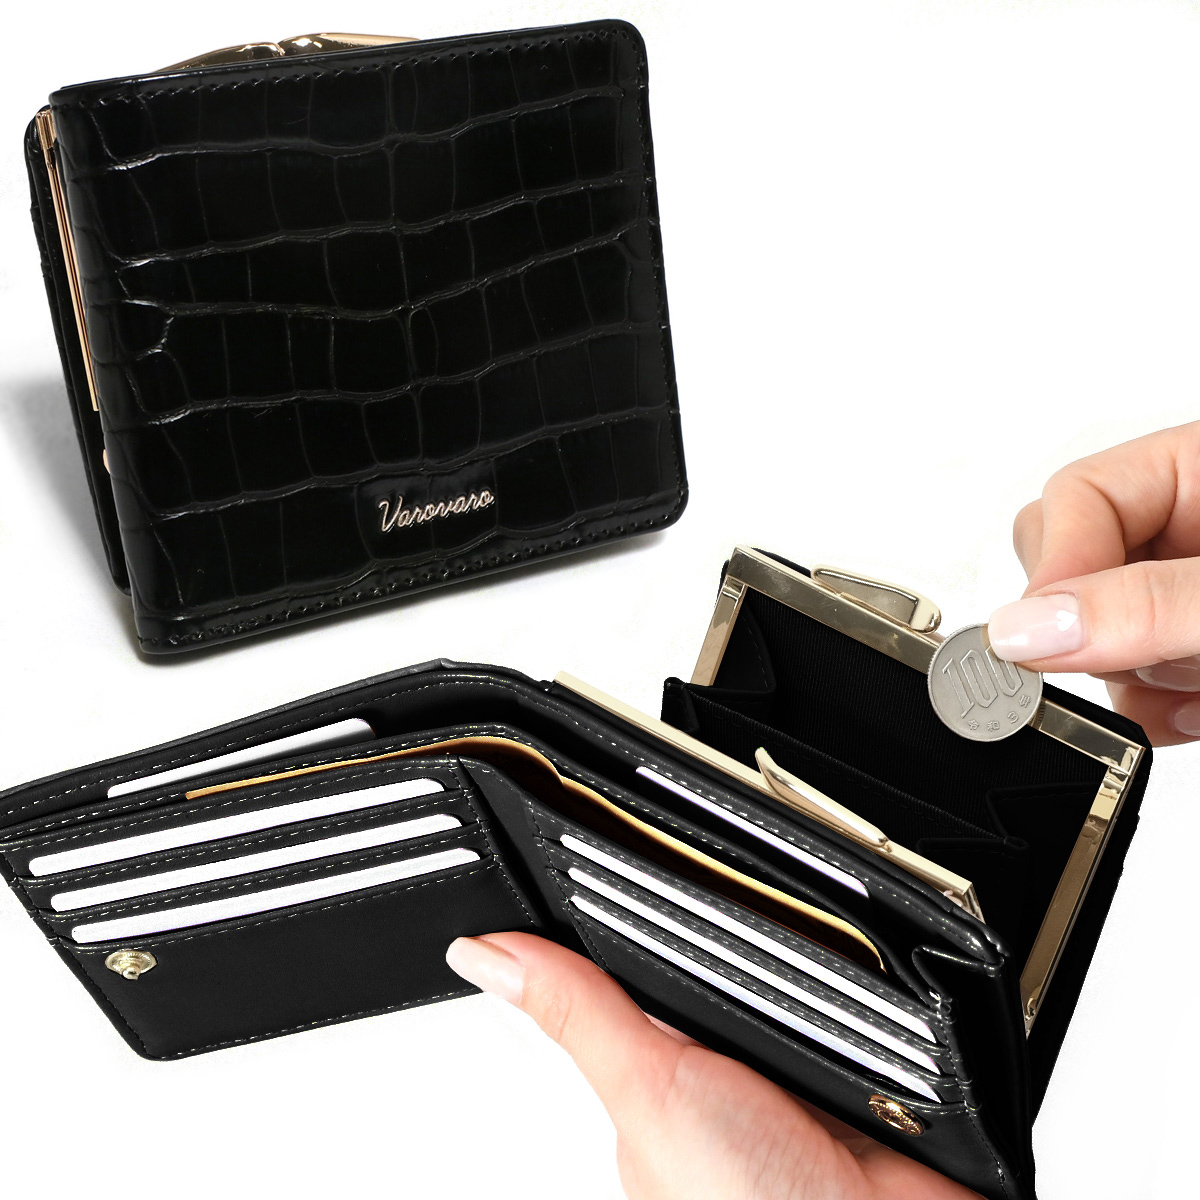 がま口財布 レディース 二つ折り財布 使いやすい お札2か所 小銭入れ 中仕切りあり 大容量 コンパ...